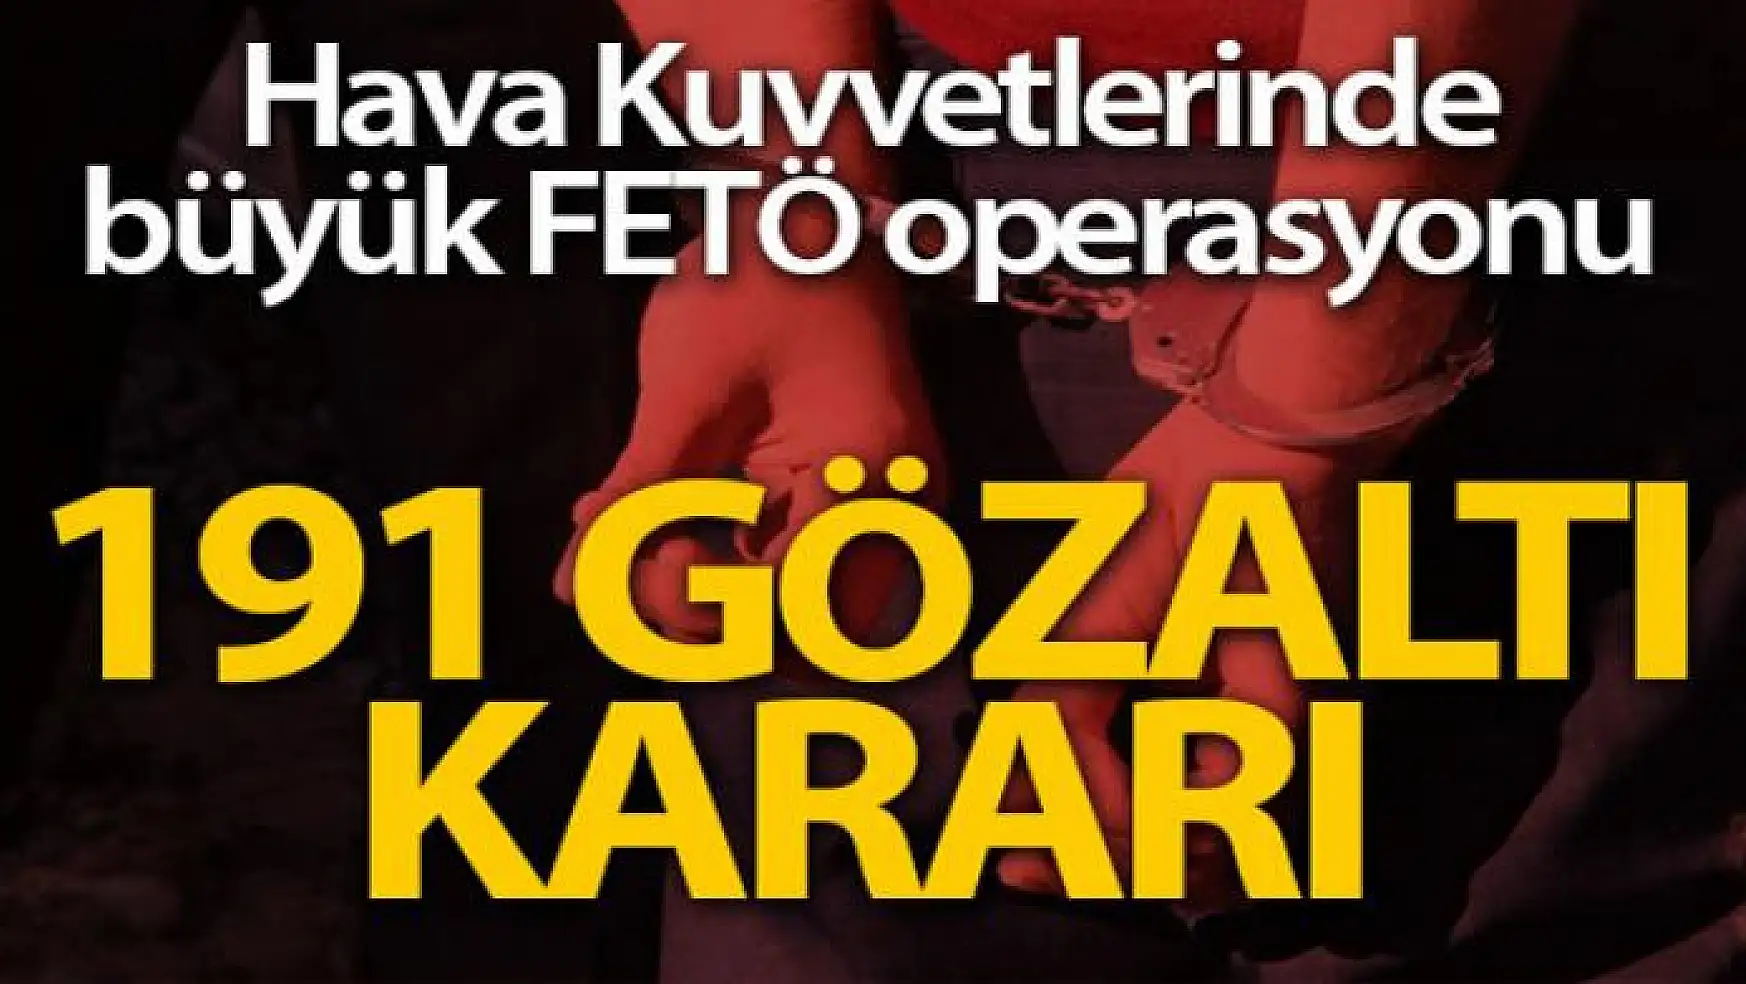 Hava Kuvvetlerinde FETÖ operasyonu: 191 gözaltı kararı